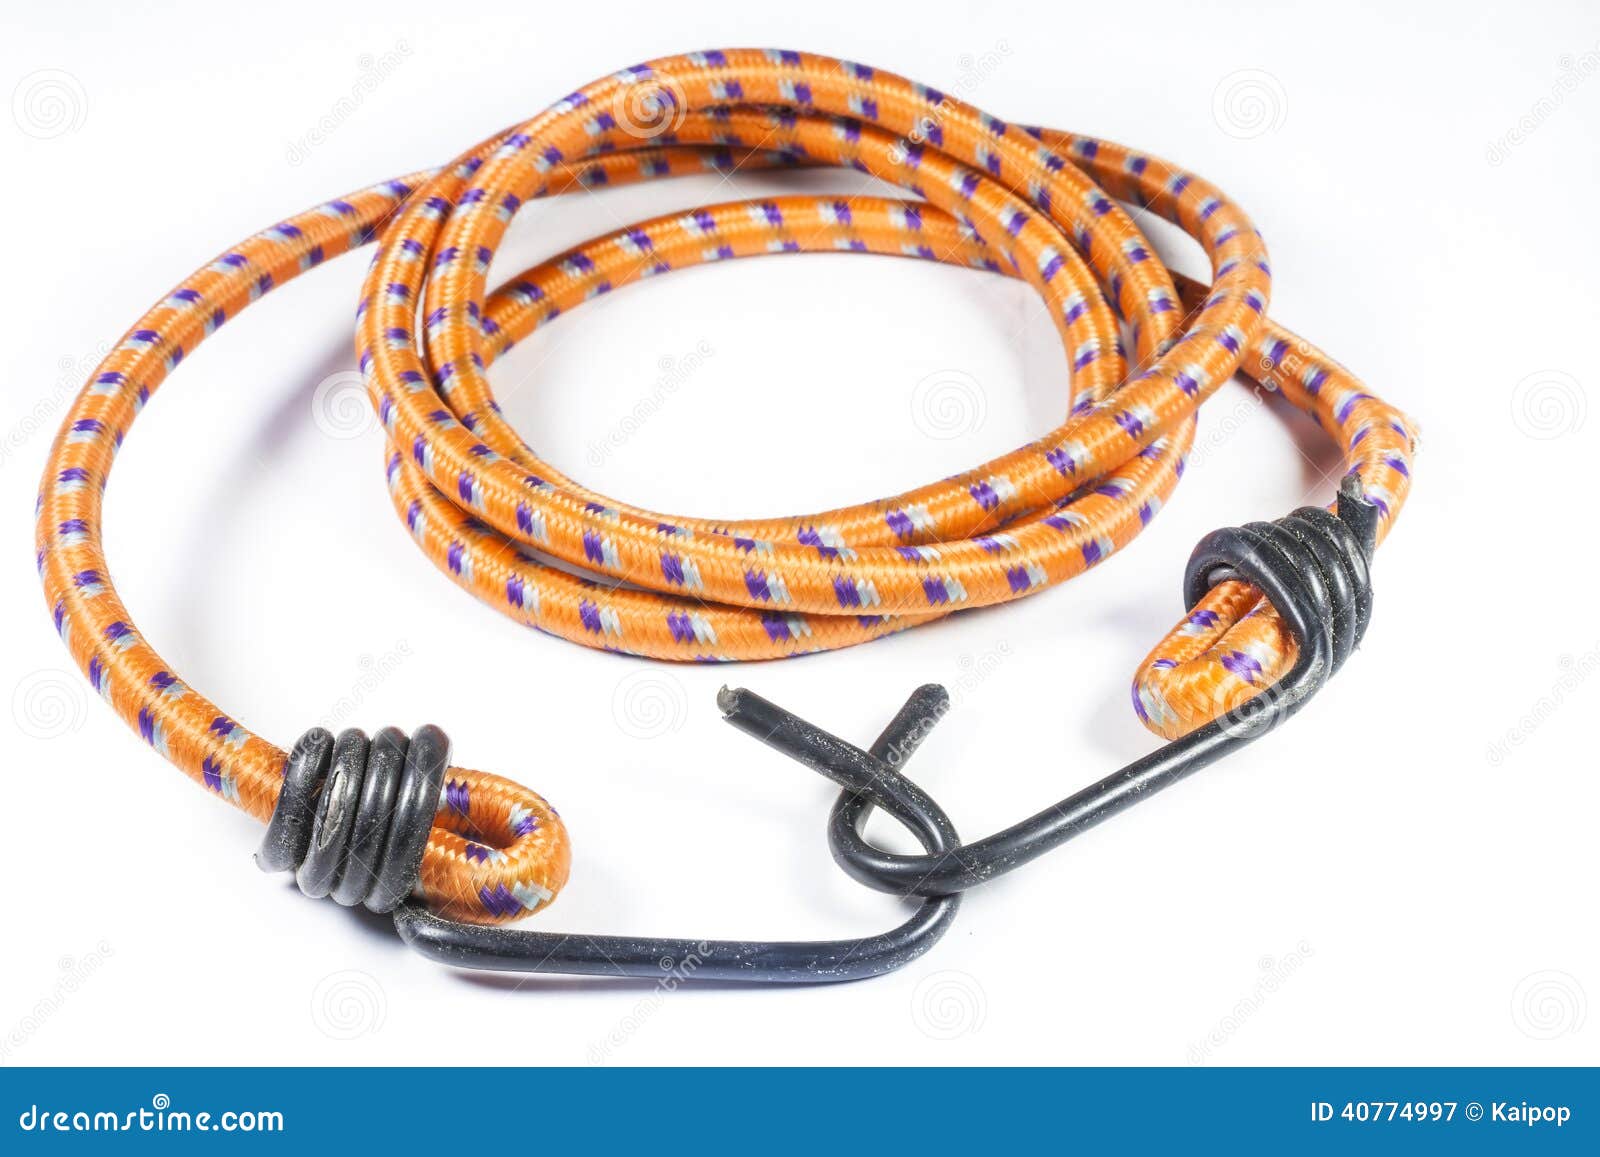 Elastisches Seil Mit Metallhaken Stockbild - Bild von gummi, brücke:  40774997